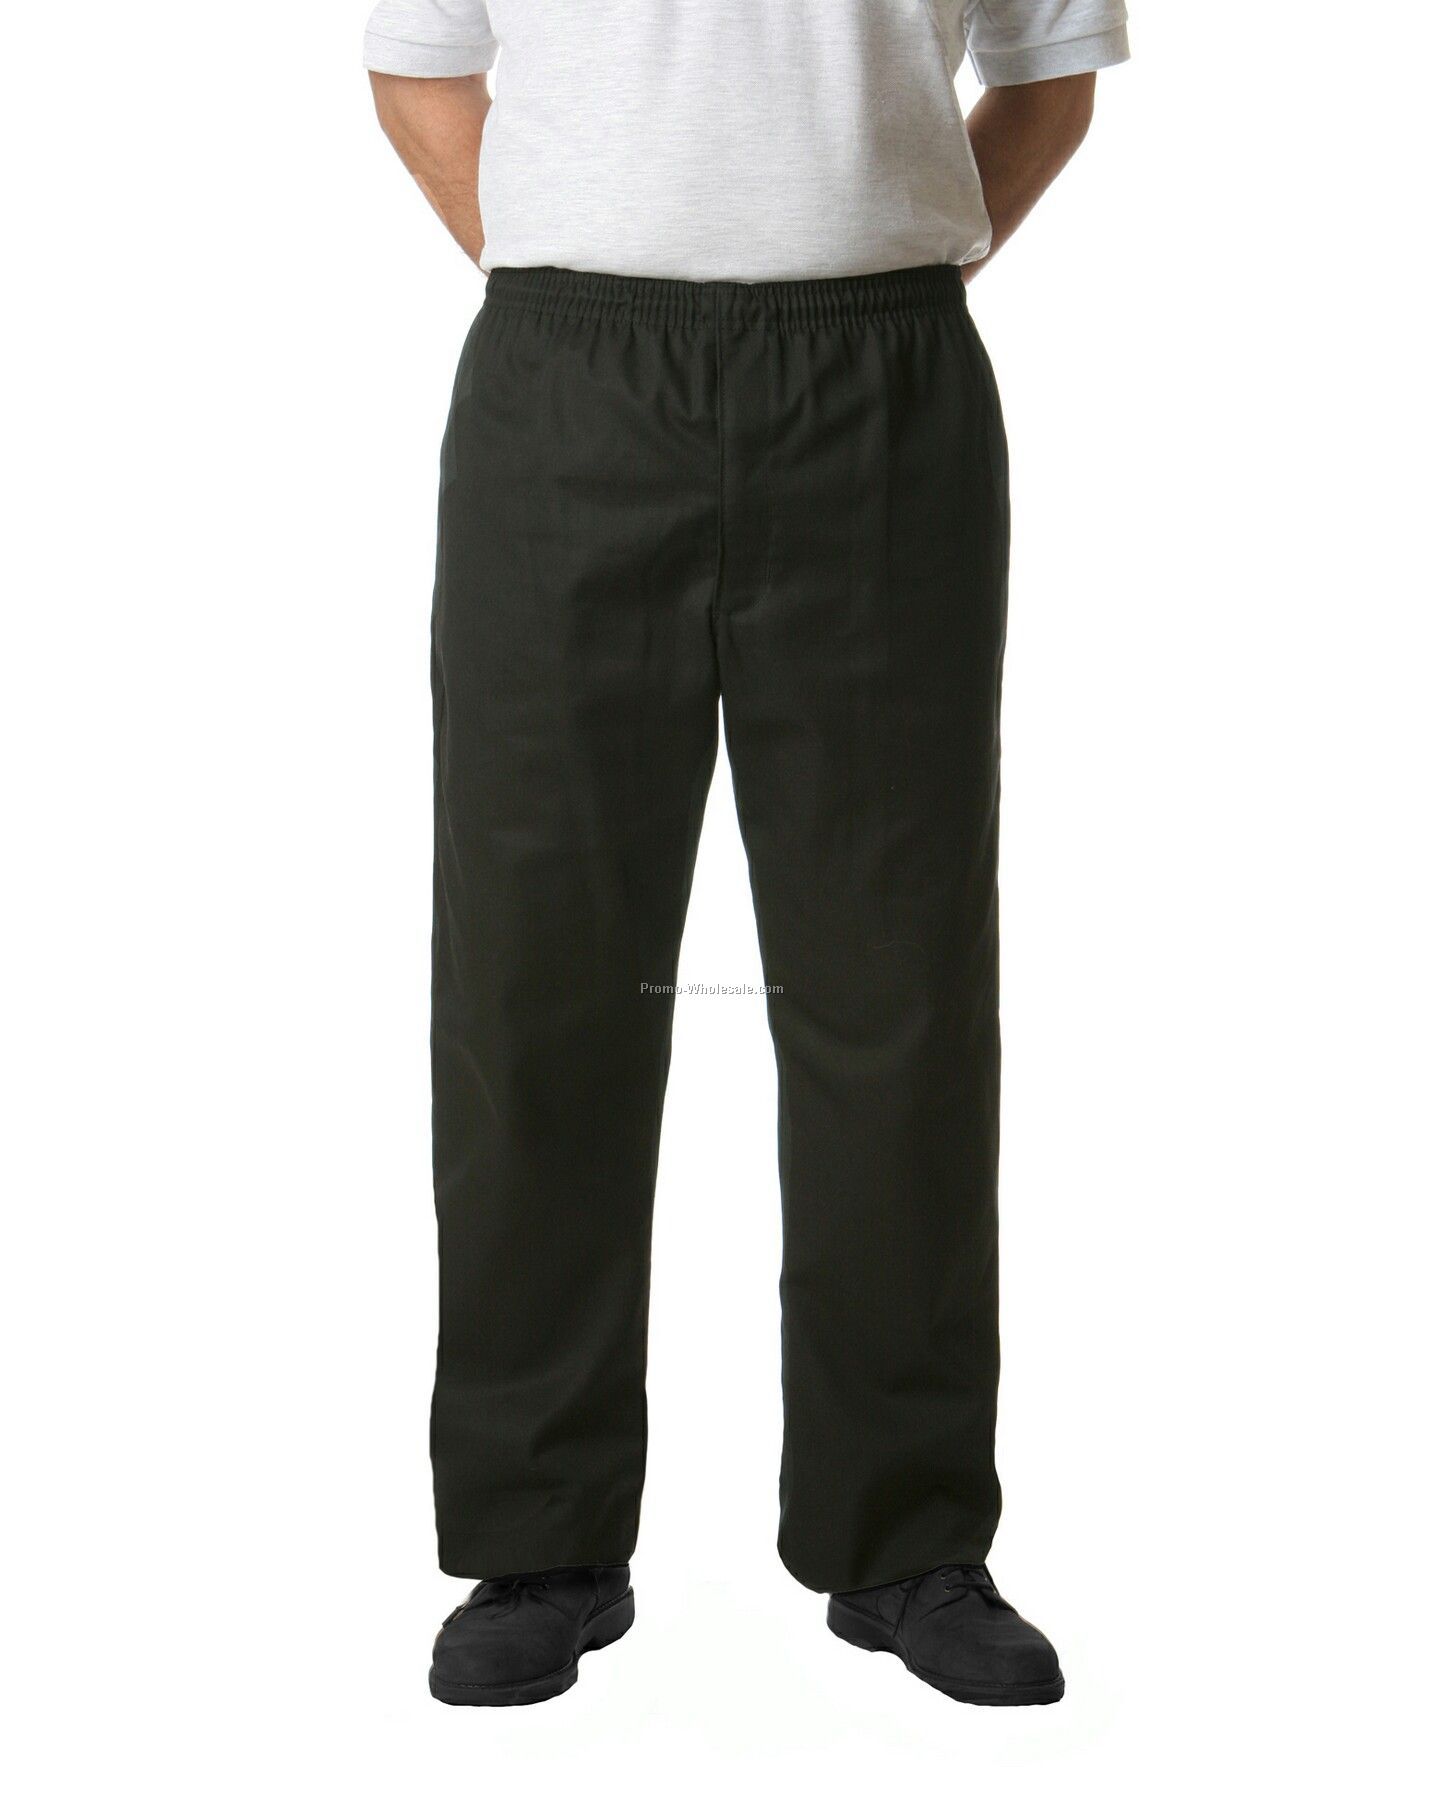 Chef Baggies Pants (Small/ Black & White Chalk Stripe)